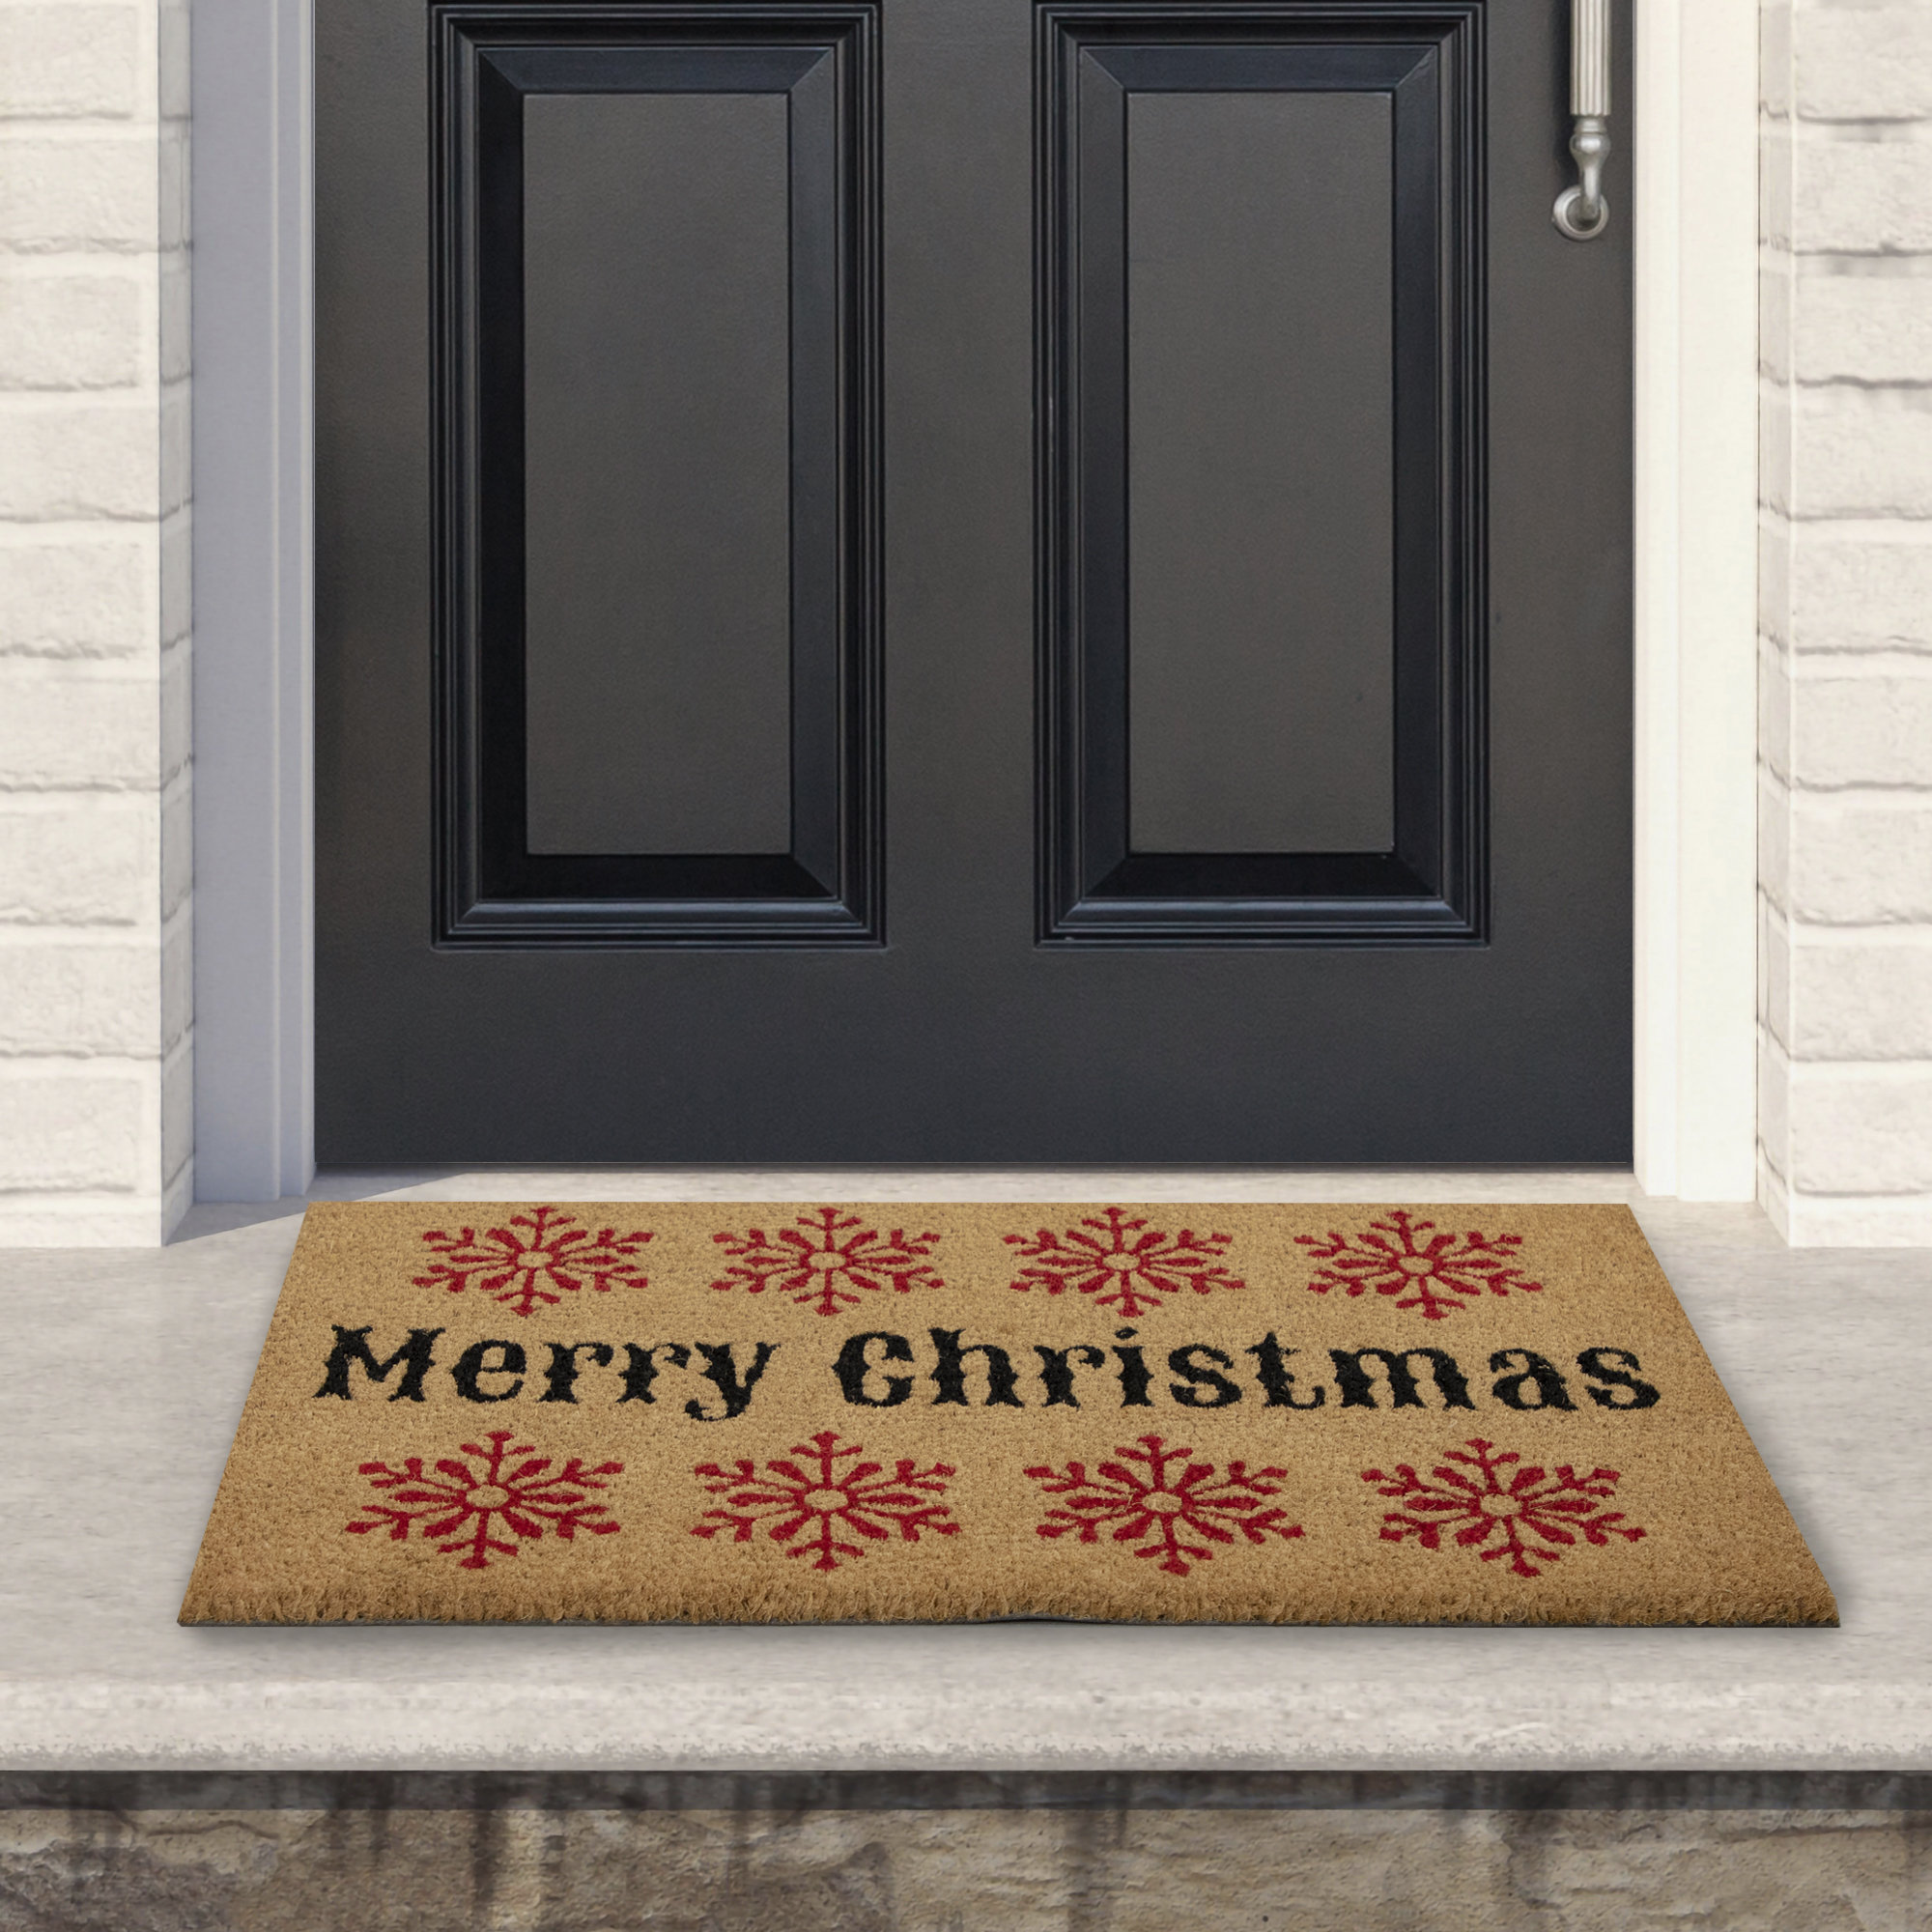 https://assets.wfcdn.com/im/58818232/compr-r85/2157/215708760/natural-coir-merry-christmas-snowflake-doormat-18-x-30.jpg